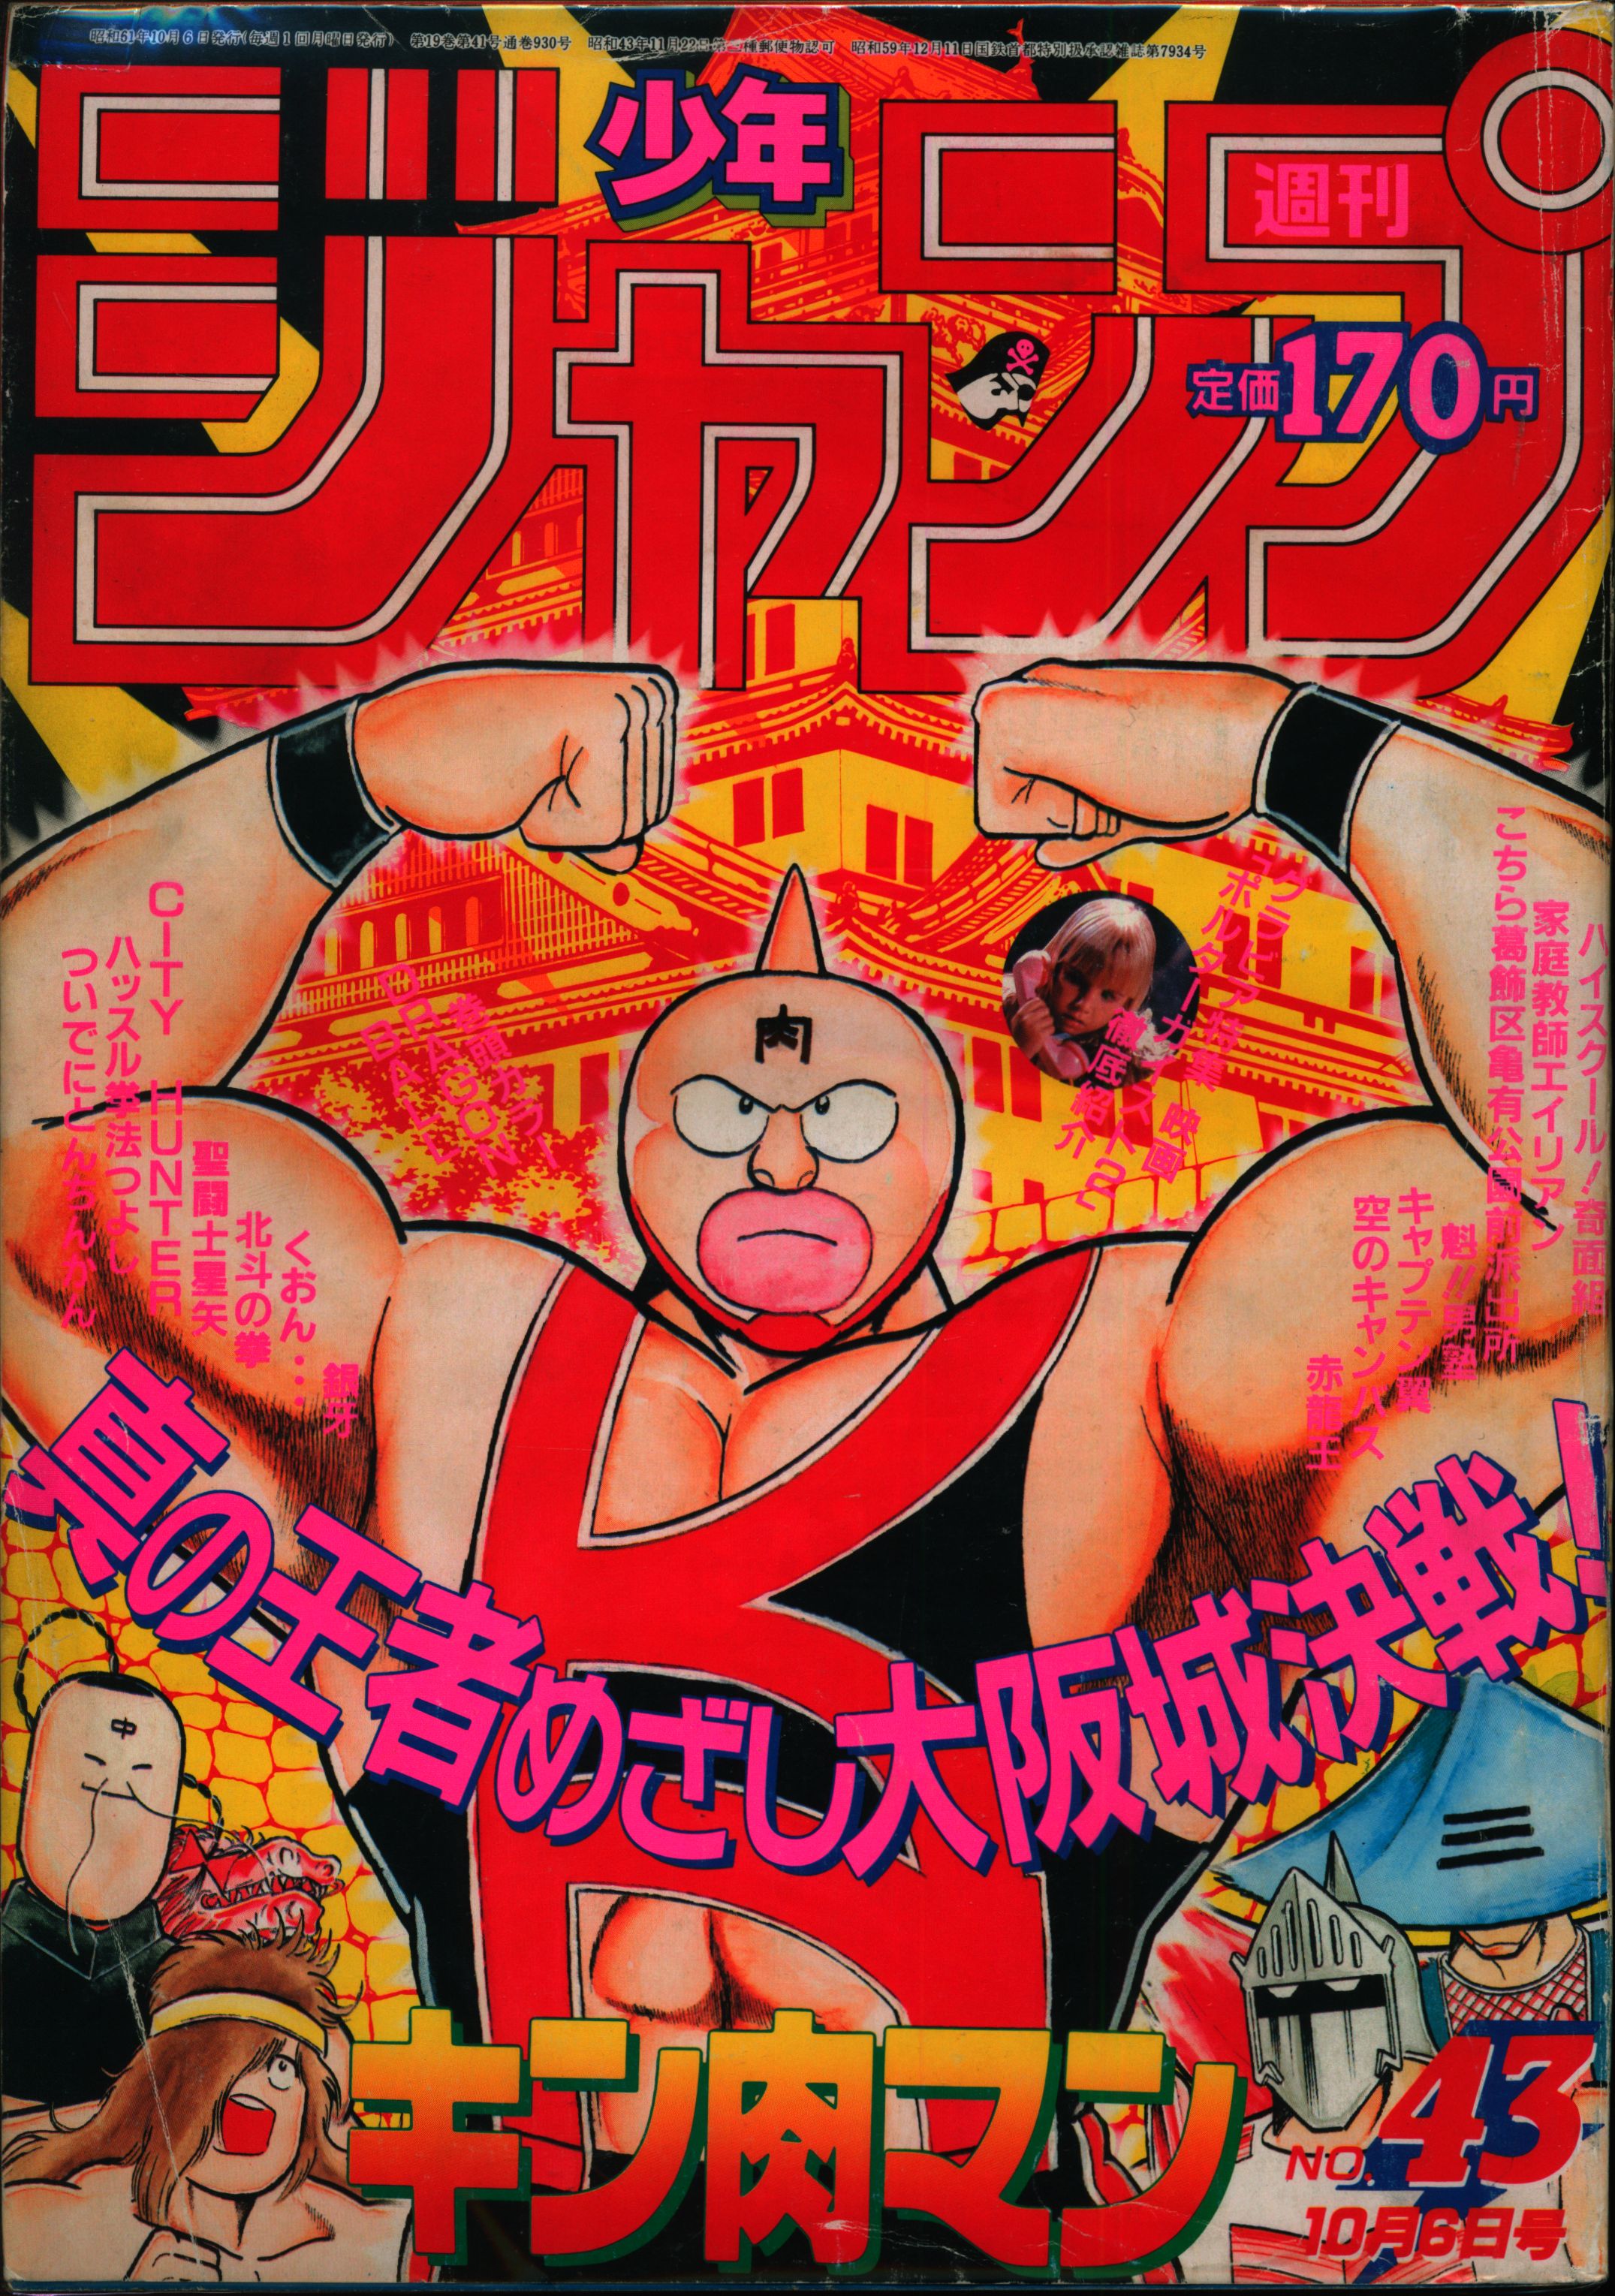 集英社 1986年(昭和61年)の漫画雑誌 週刊少年ジャンプ 1986年(昭和61年 